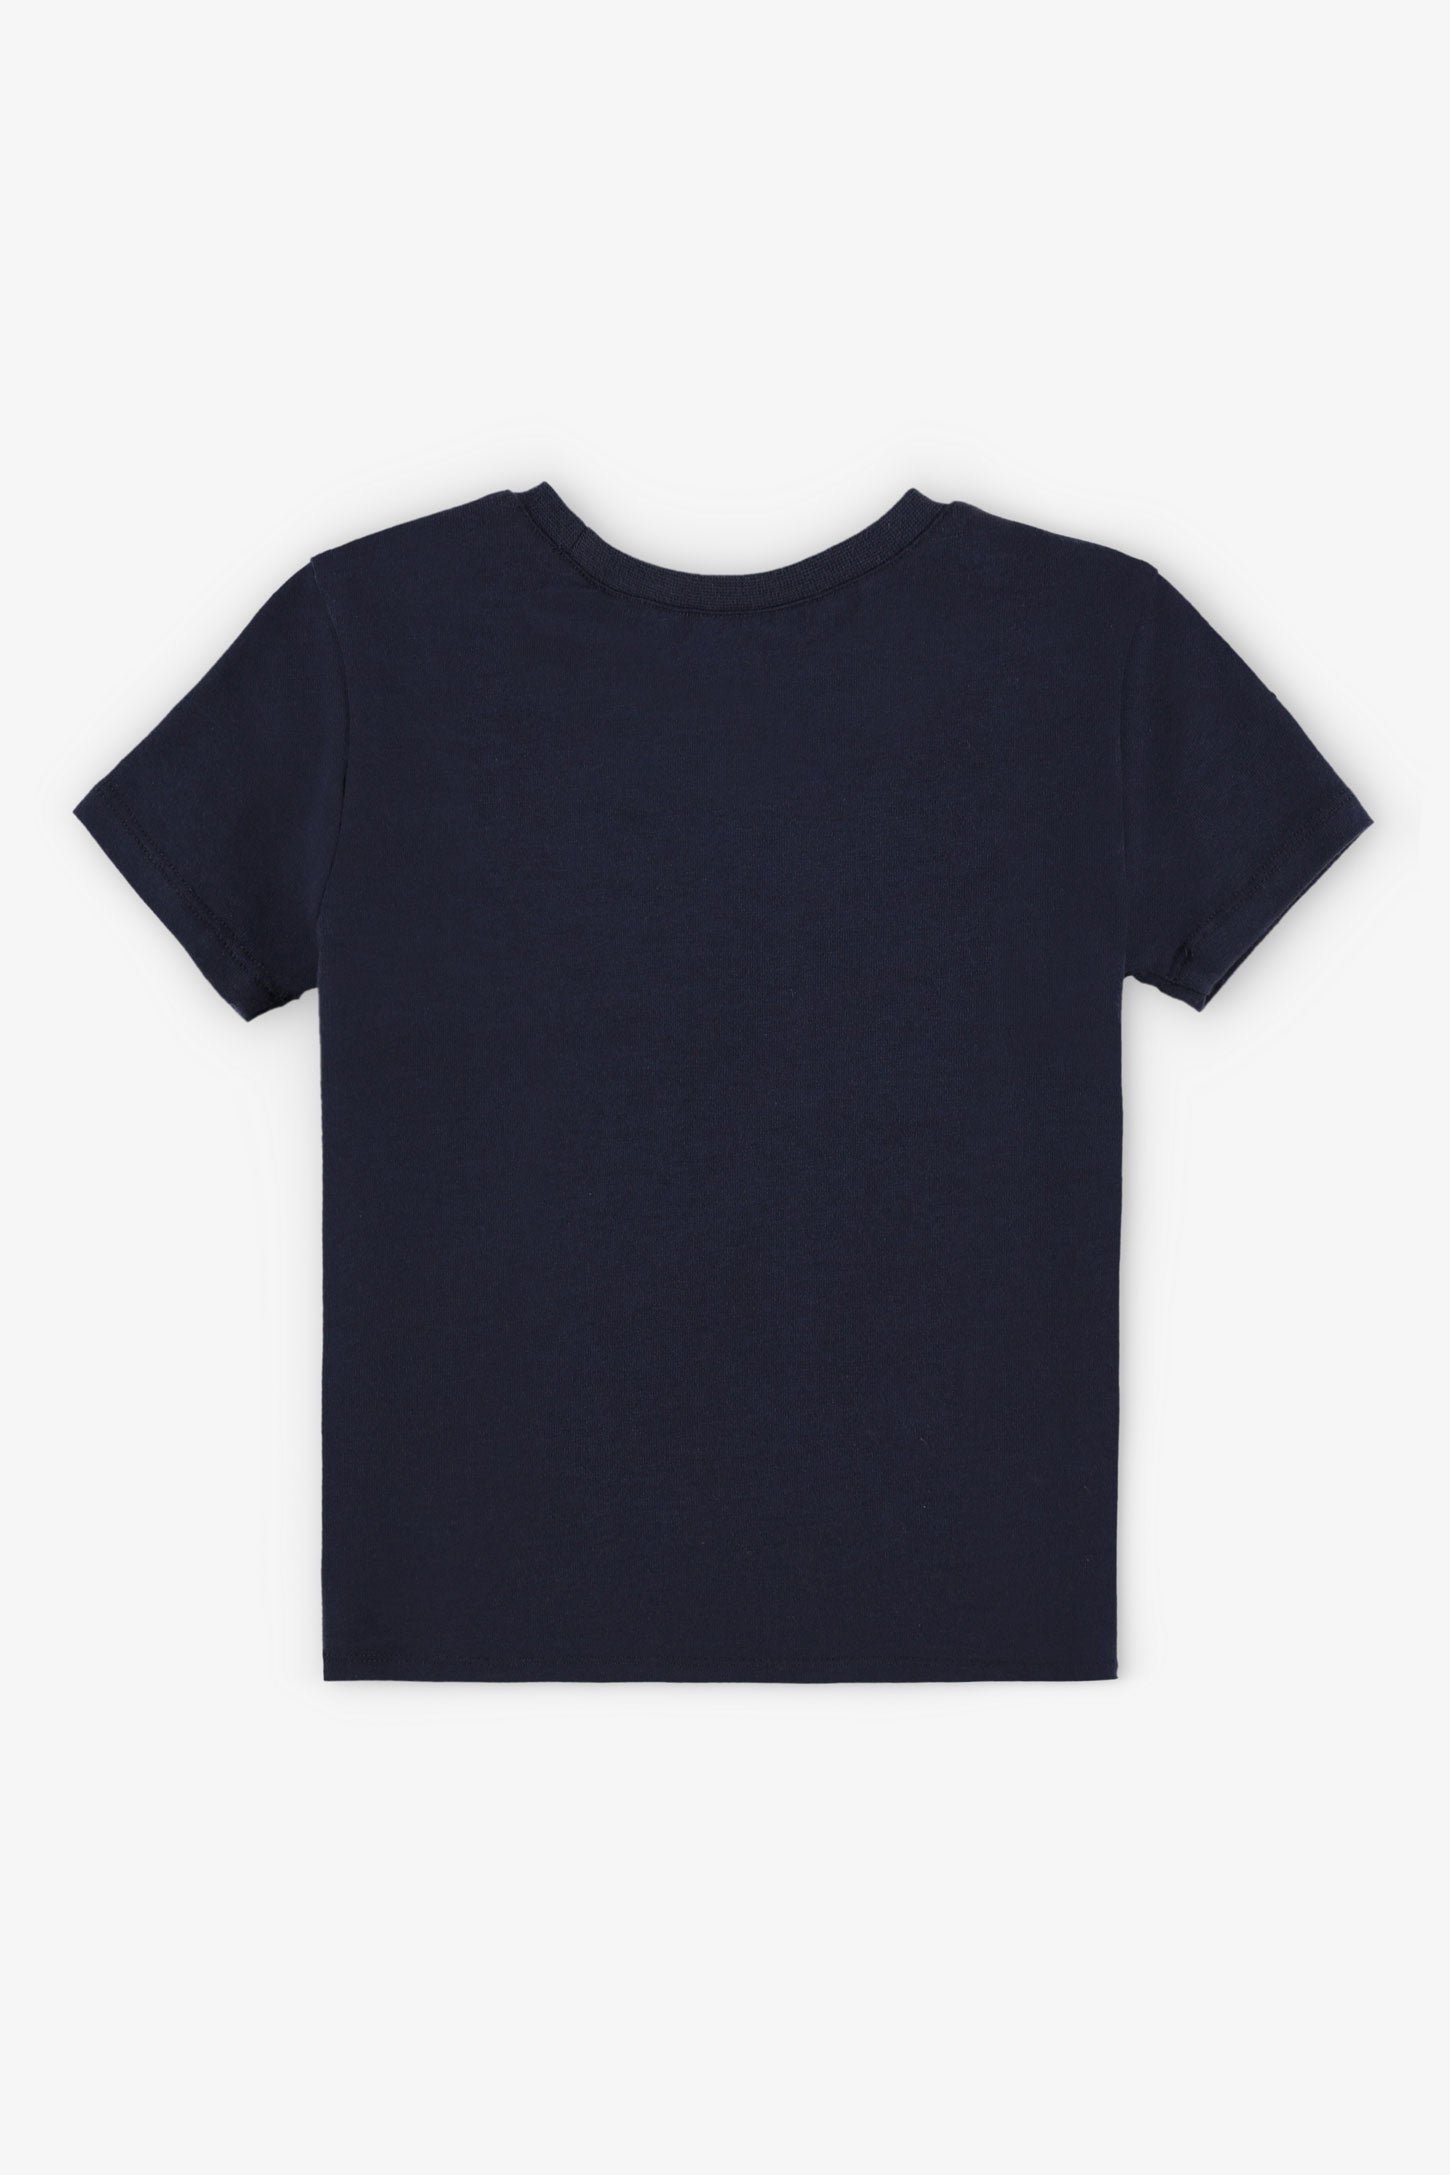 T-shirt col rond coupe droite coton, 2/15$ - Bébé garçon && BLEU MARINE